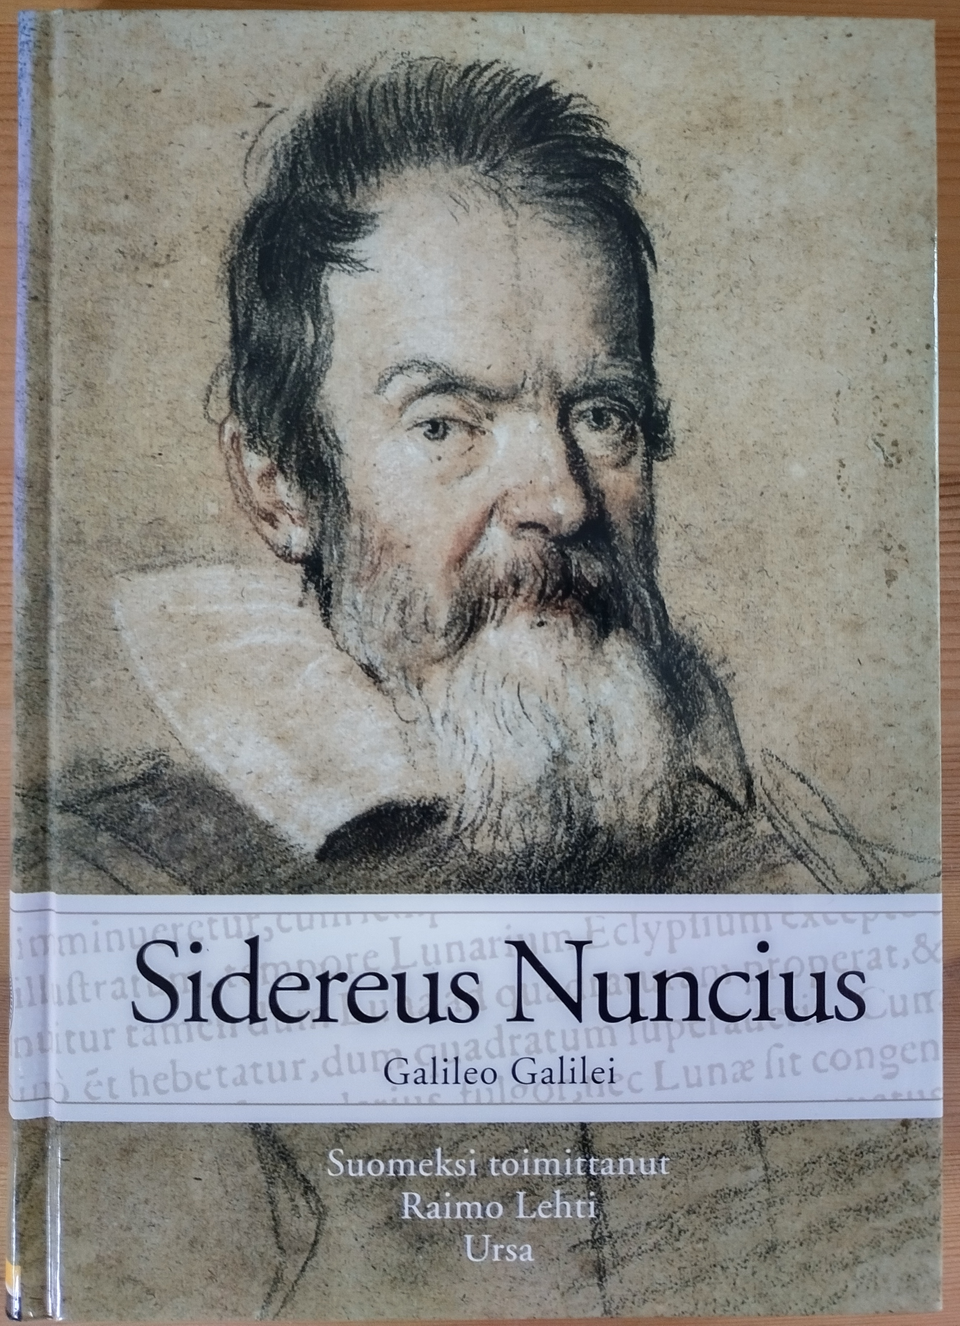 Sidereus Nuncius - Galileo Galilei